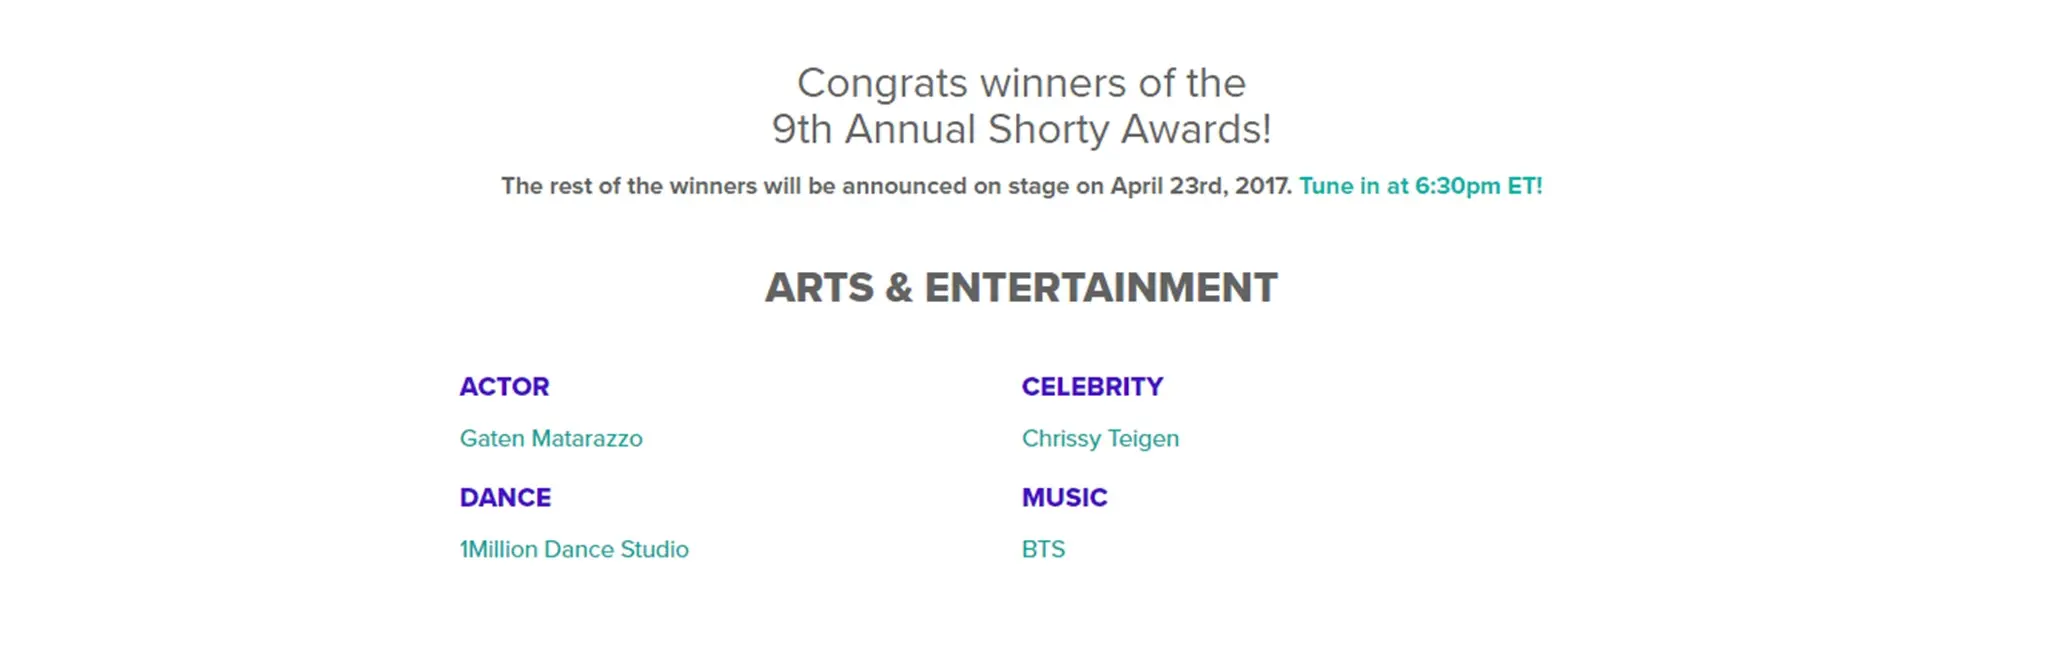 BTS jadi pemenang di ajang Shorty Awards ke-9 tahun 2017. (via shortyawards.com)